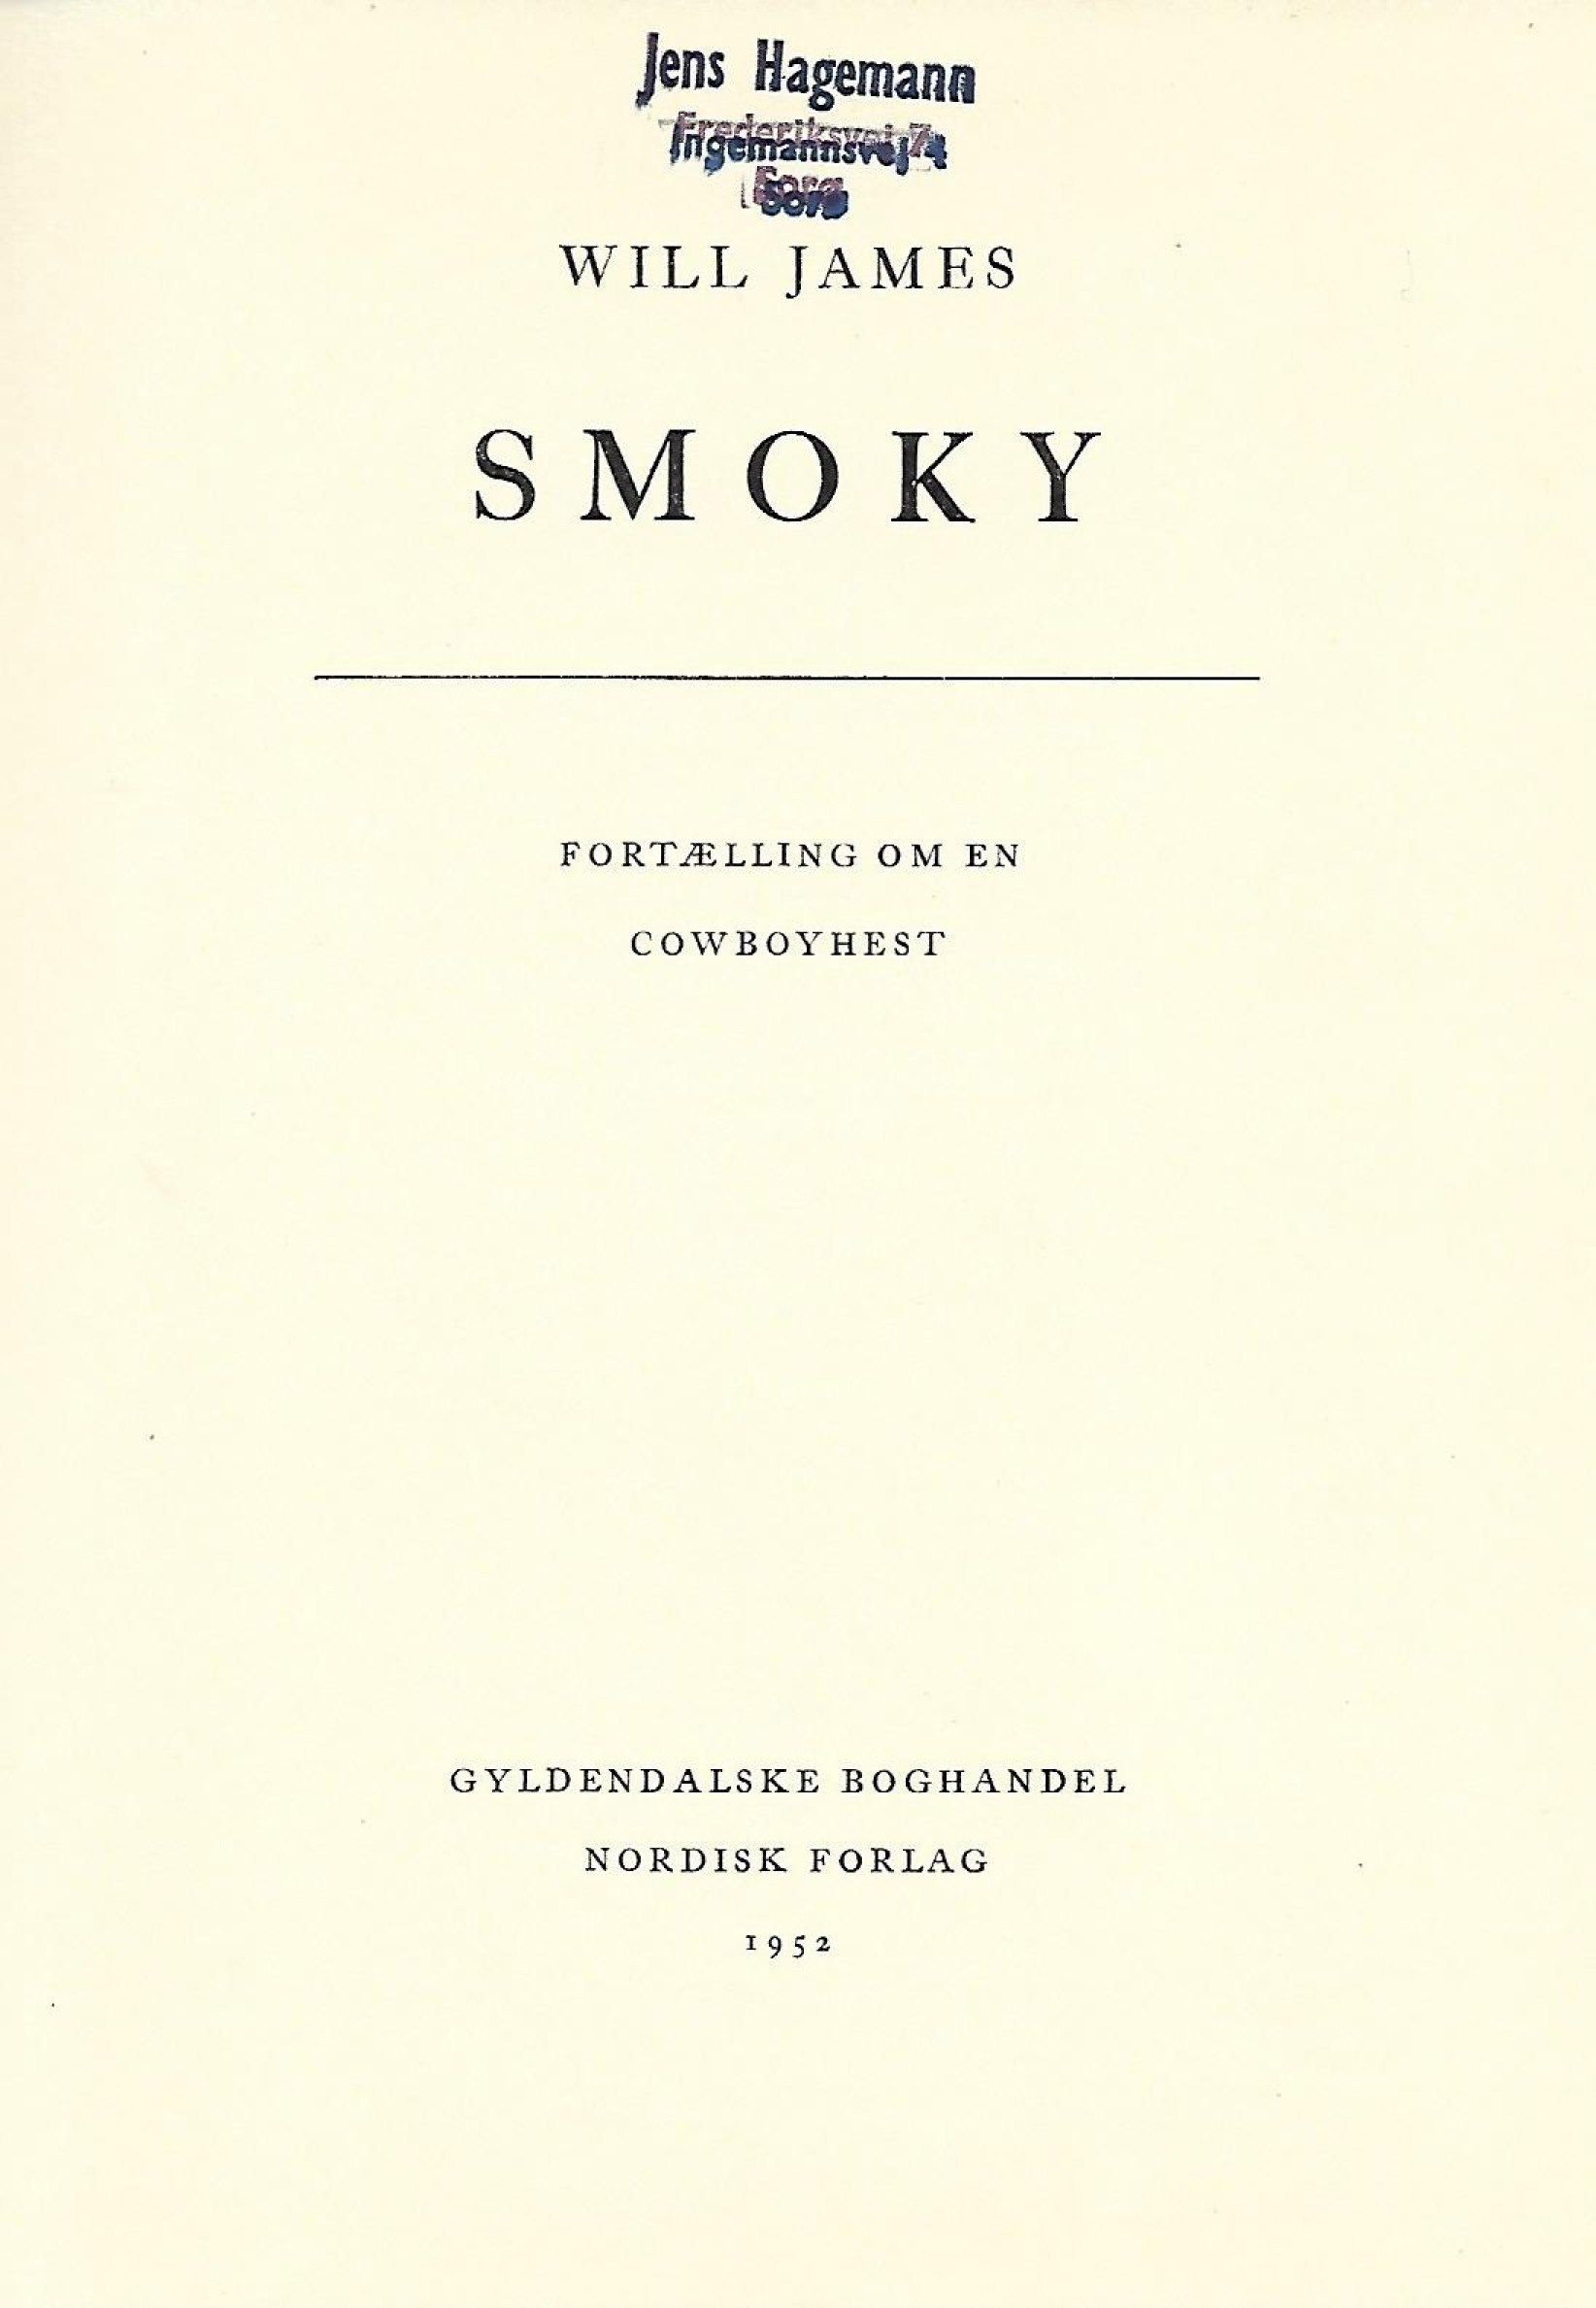 Smoky - Will James-1